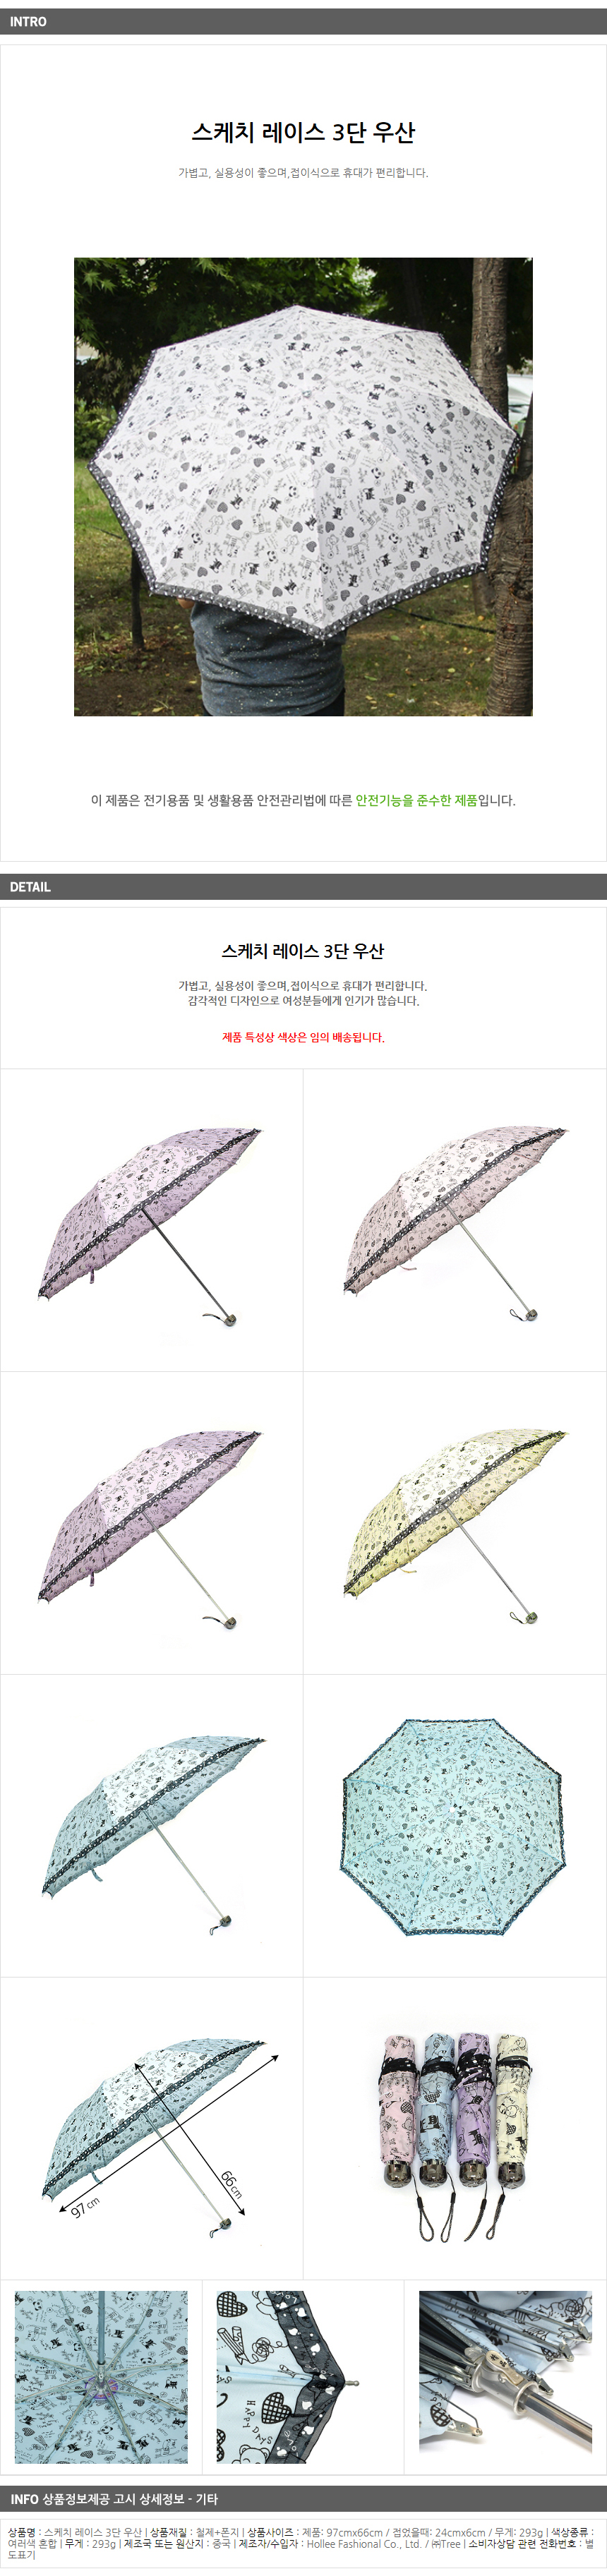 스케치 레이스 3단 우산/팬시점판매용 잡화